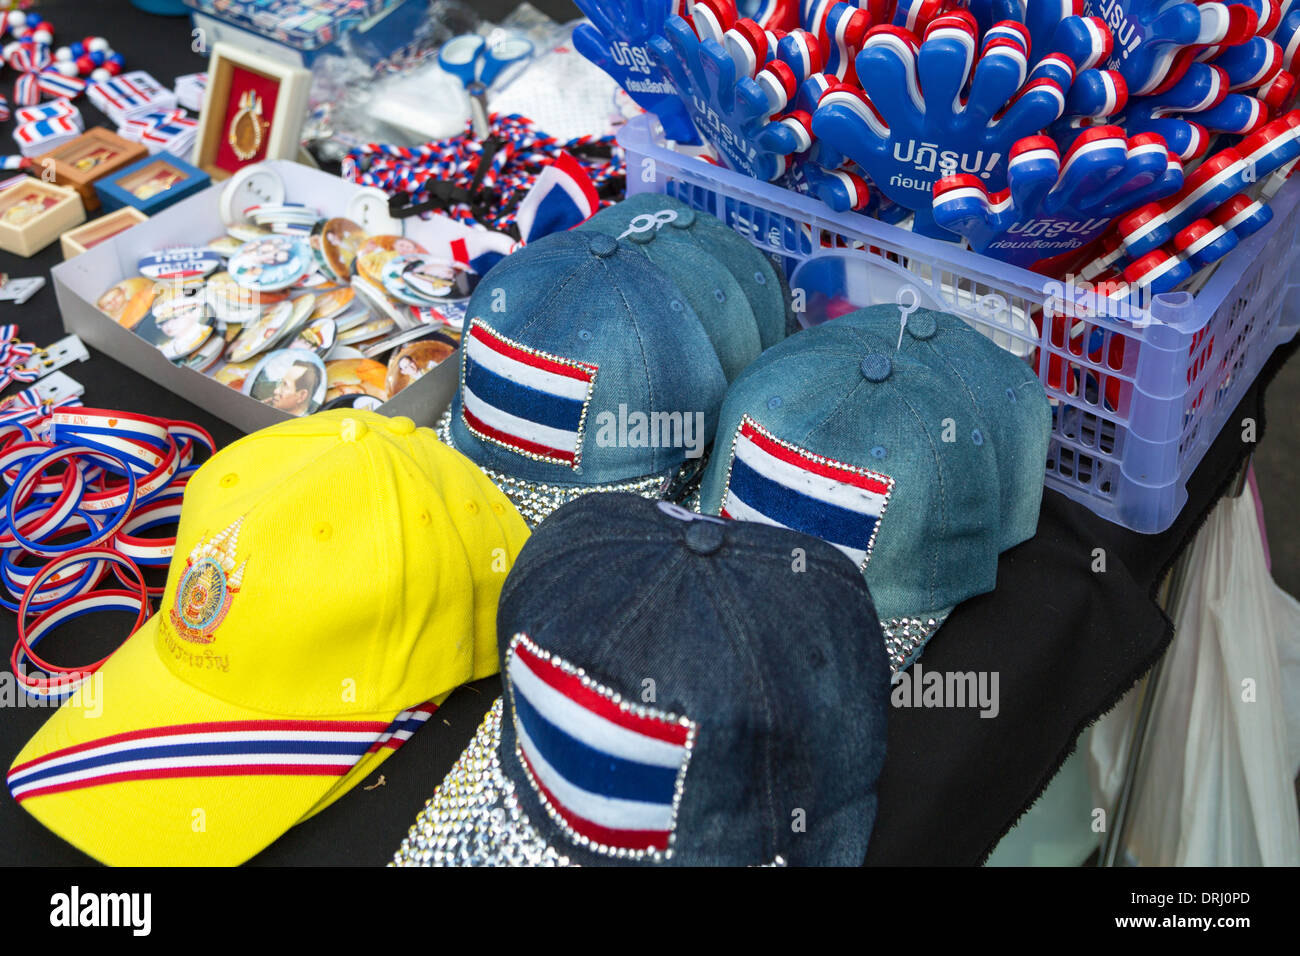 Market stall at political demonstration, Bangkok, Thailand Stock Photo